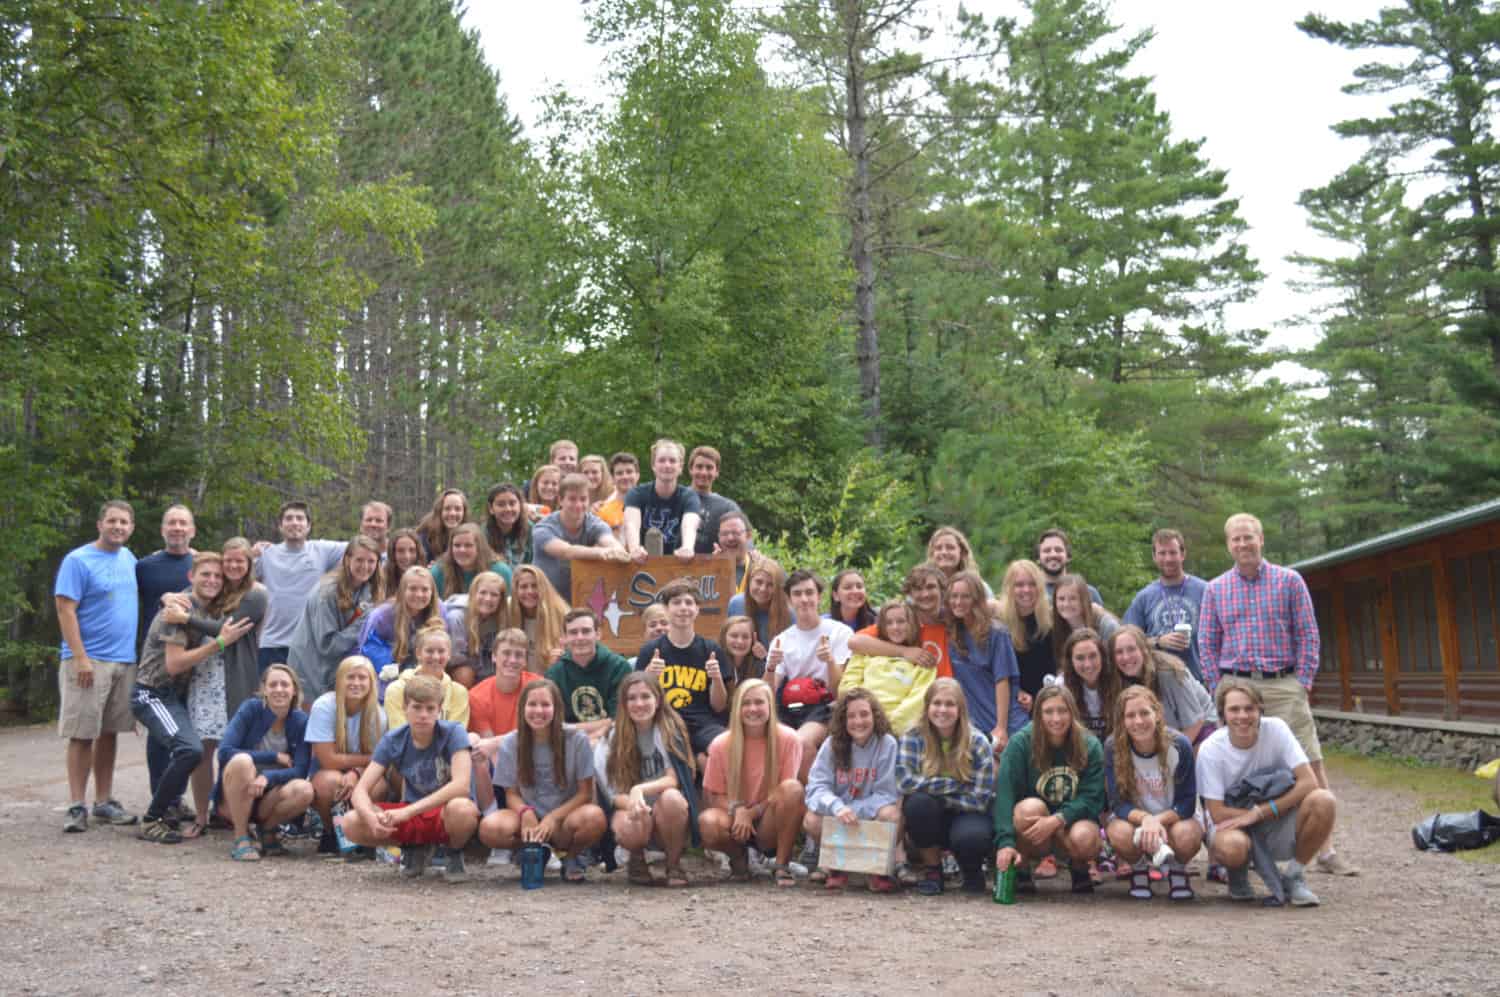 Youth Program canoe trip in 2018